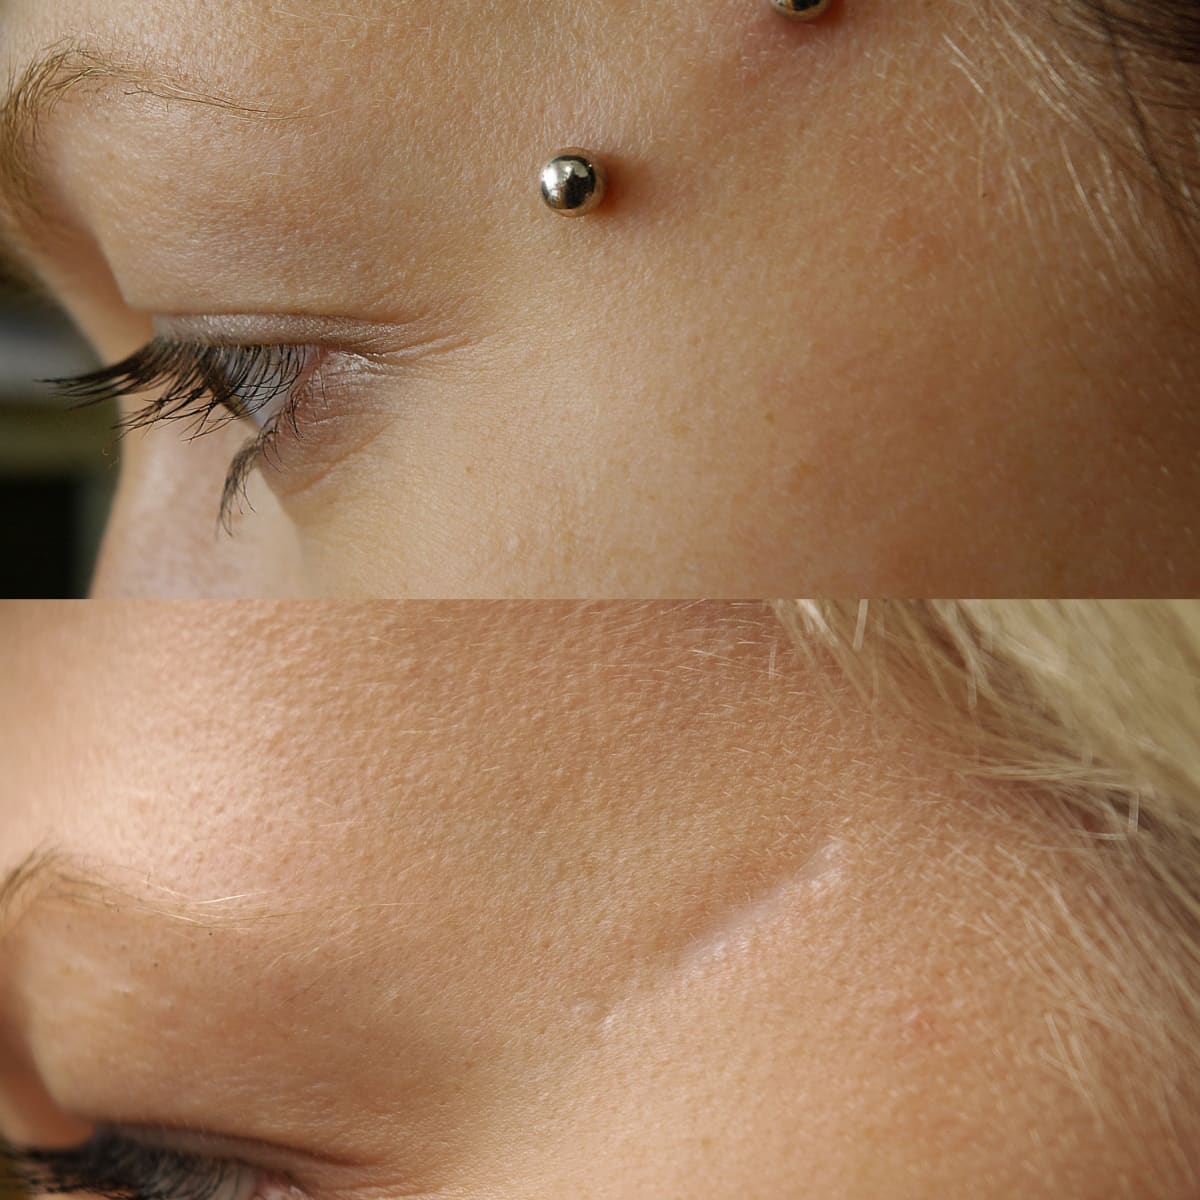 different types of dermal piercings